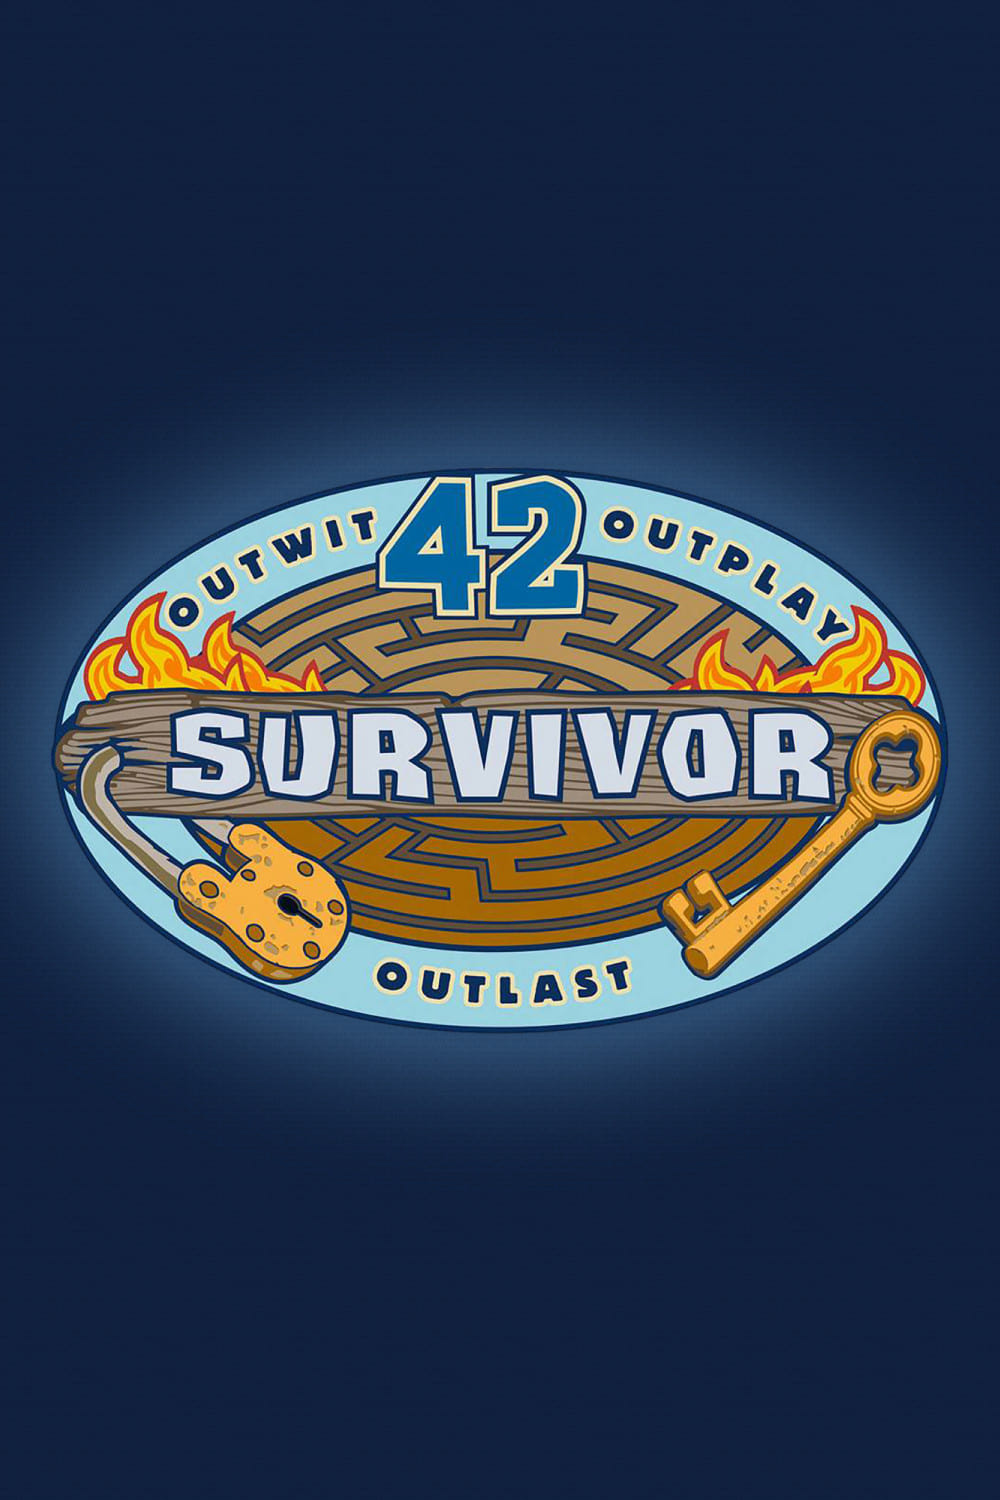 Survivor Season 42